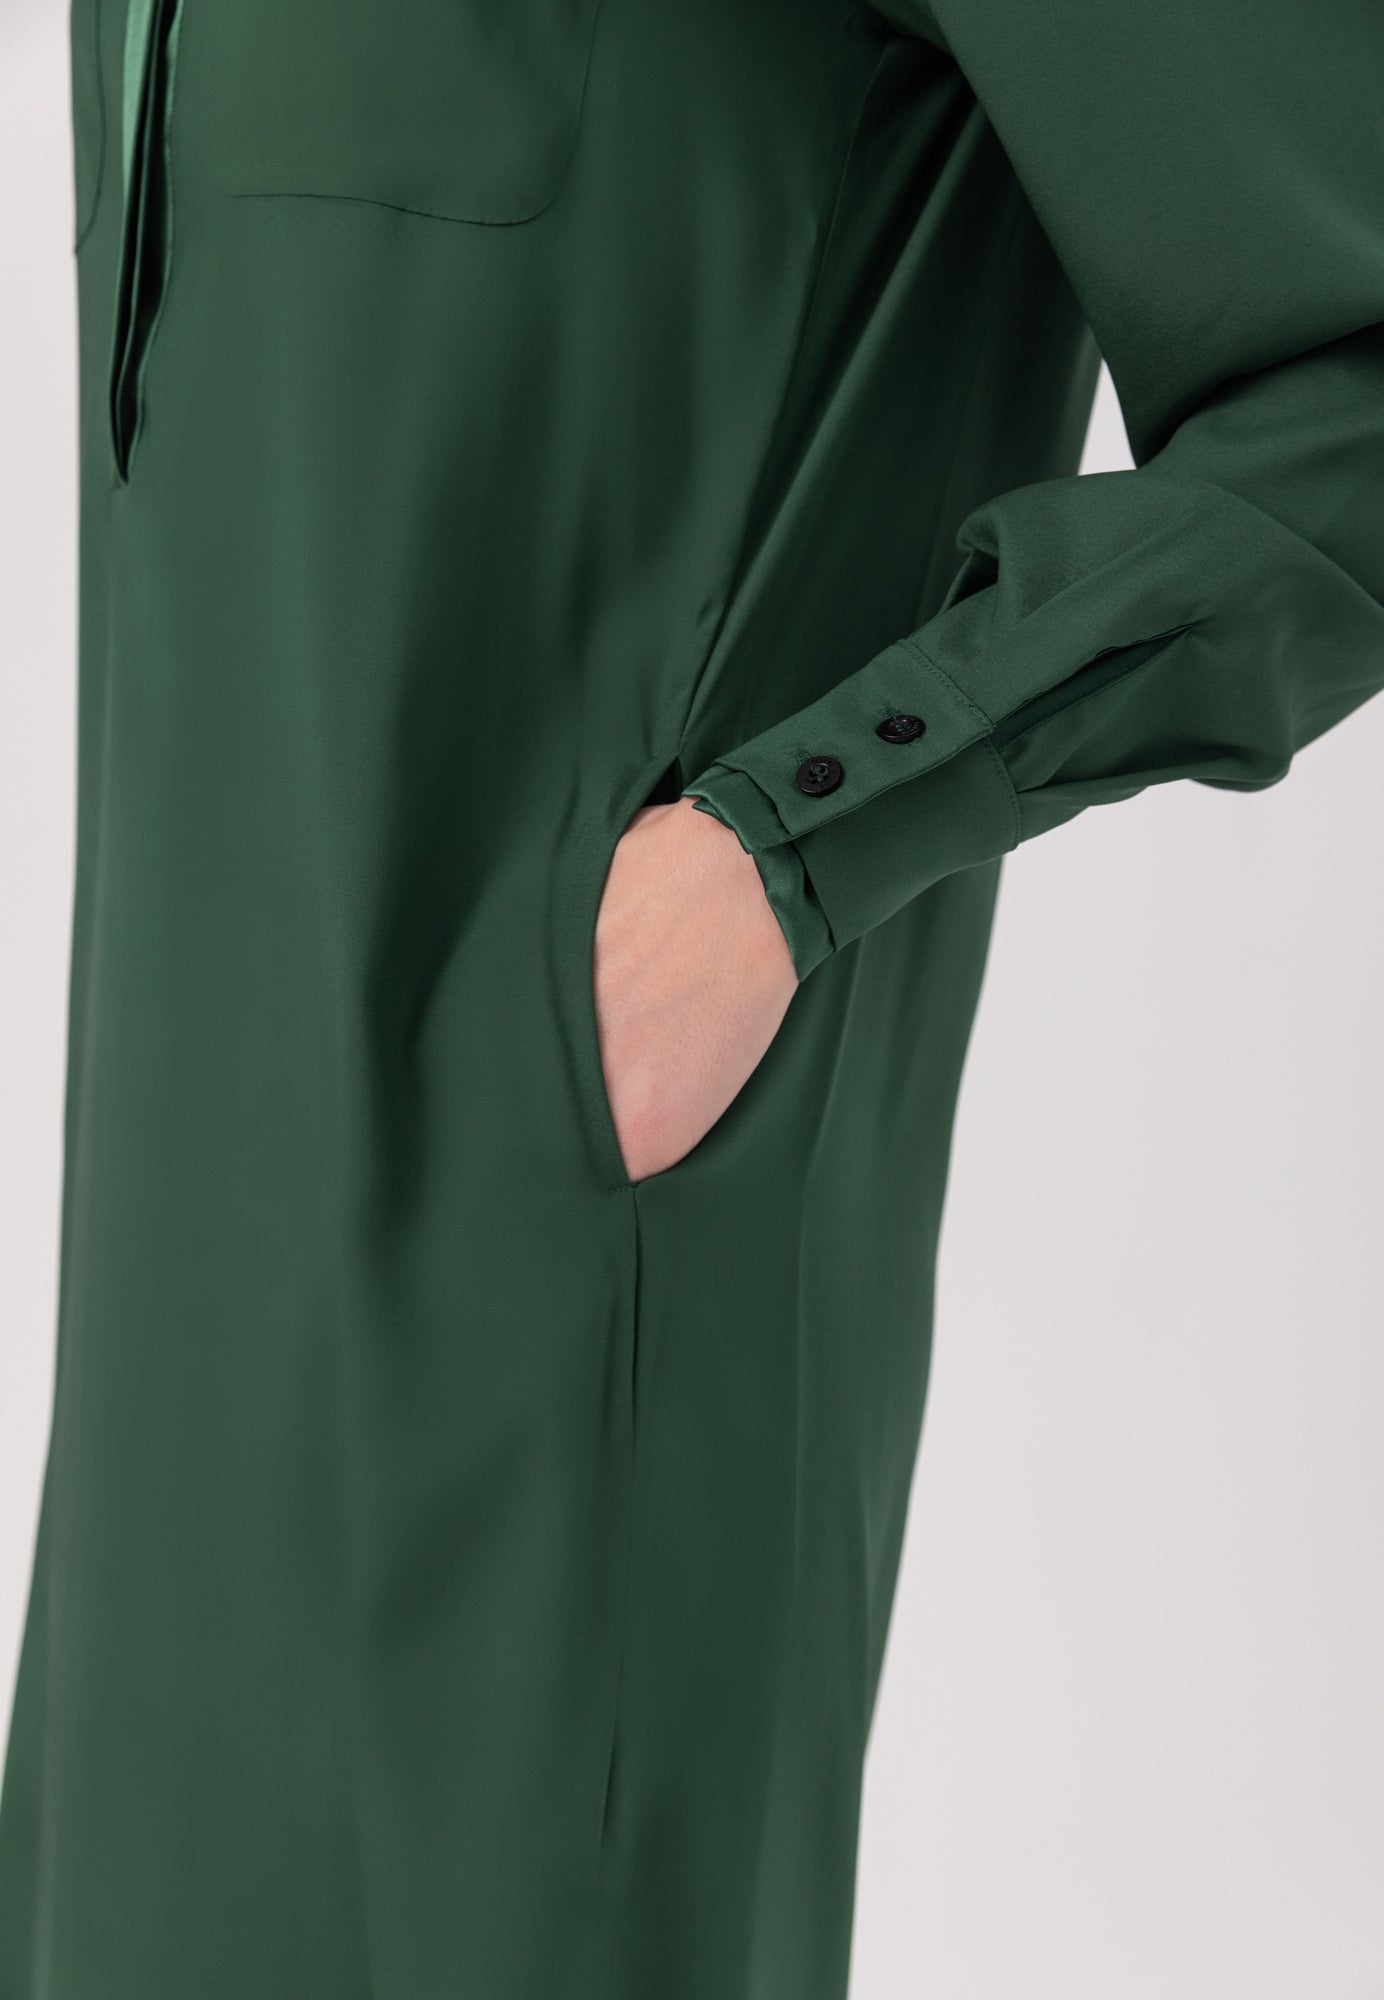 Midi-Hemdkleid aus feinster Seide mit Stehkragen, seitlichen Schlitzen und verdeckter Knopfleiste.